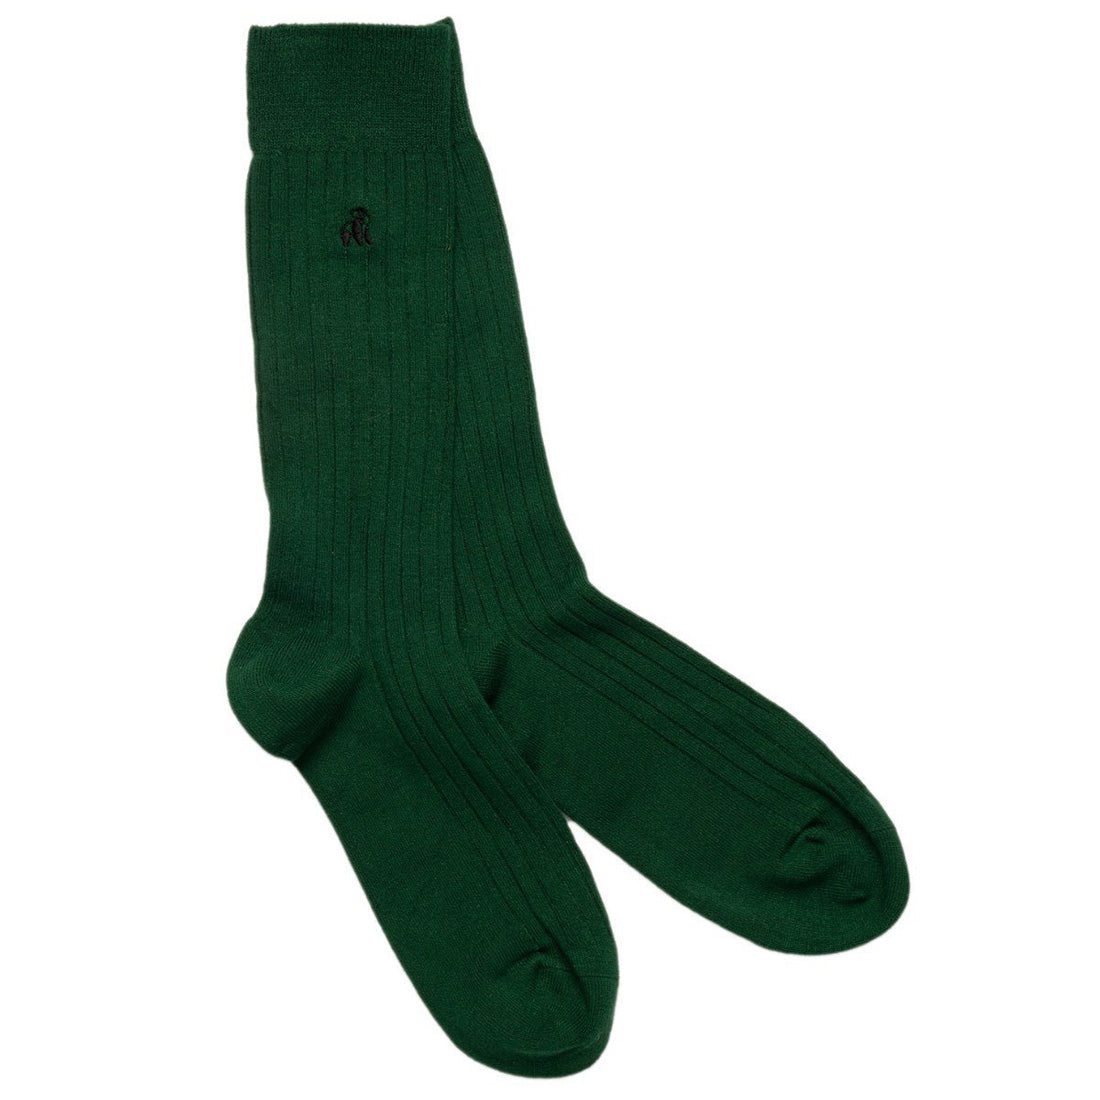 socks-racing-green-bamboo-socks-1_add83f2d-4db0-4b60-8e16-fe623b720862.jpg